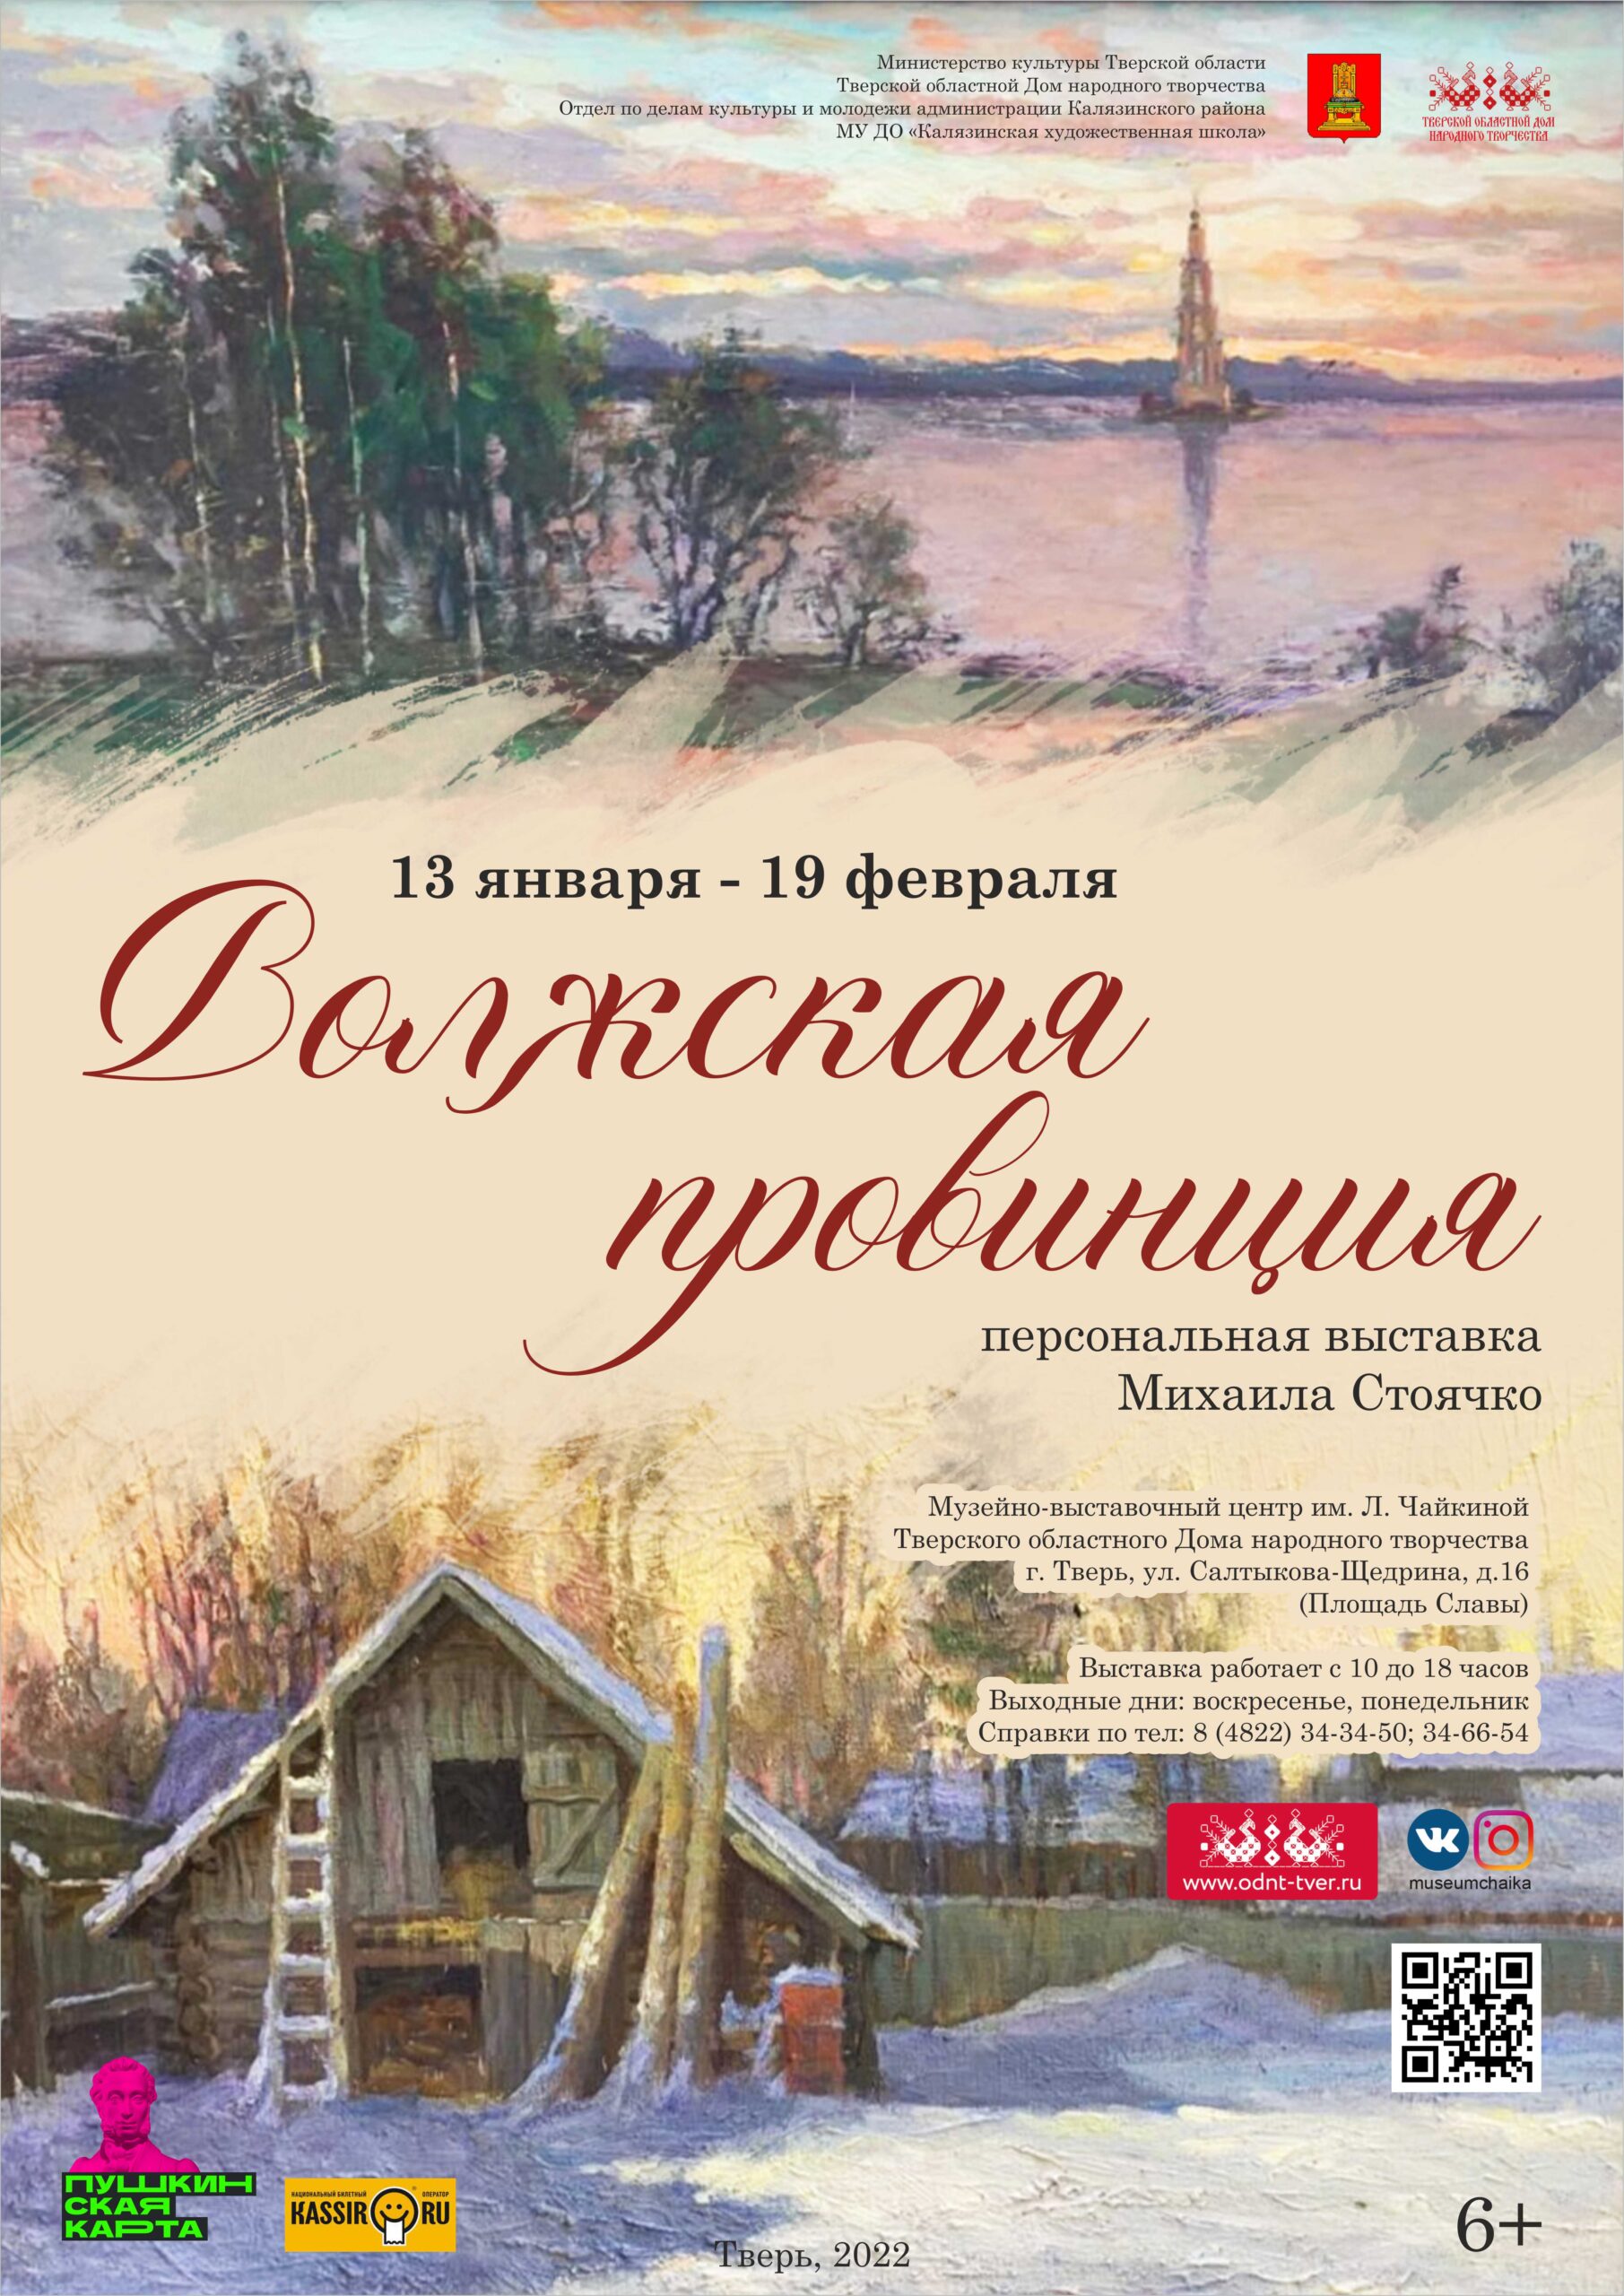 В Твери открывается персональная выставка Михаила Стоячко